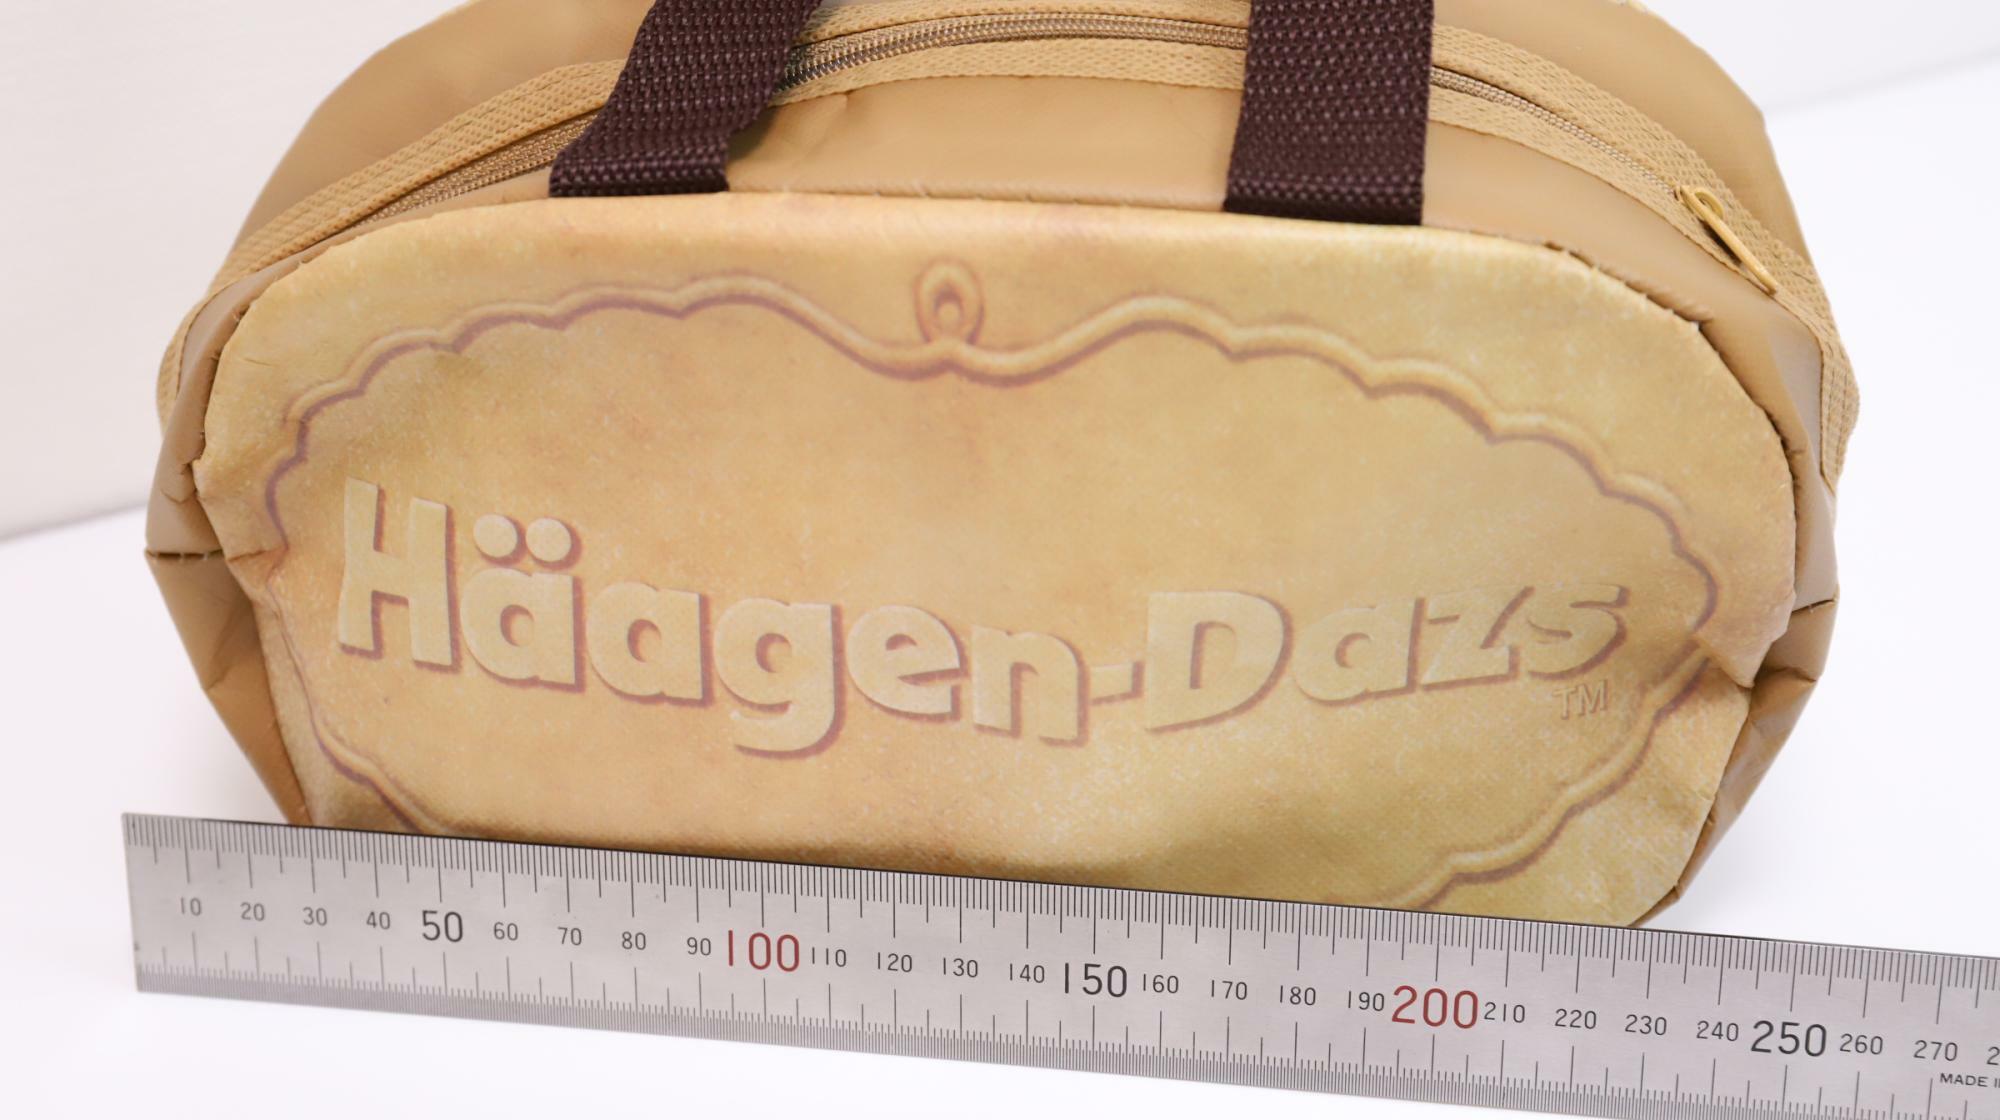 ハーゲンダッツの福袋についているクリスピーサンド型保冷バッグ